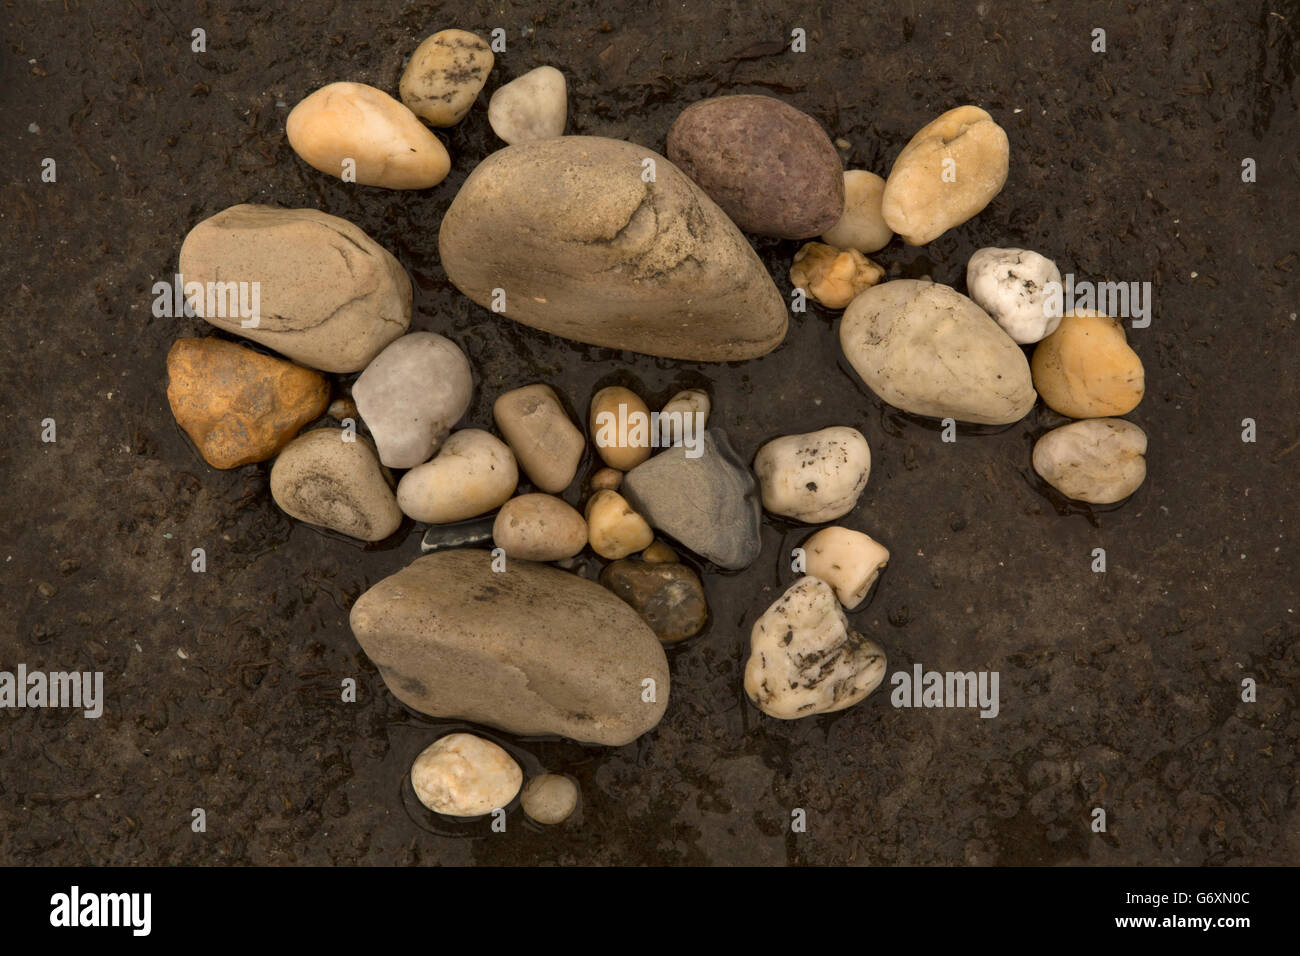 beach rocks, Delaware bay, Delaware Stock Photo